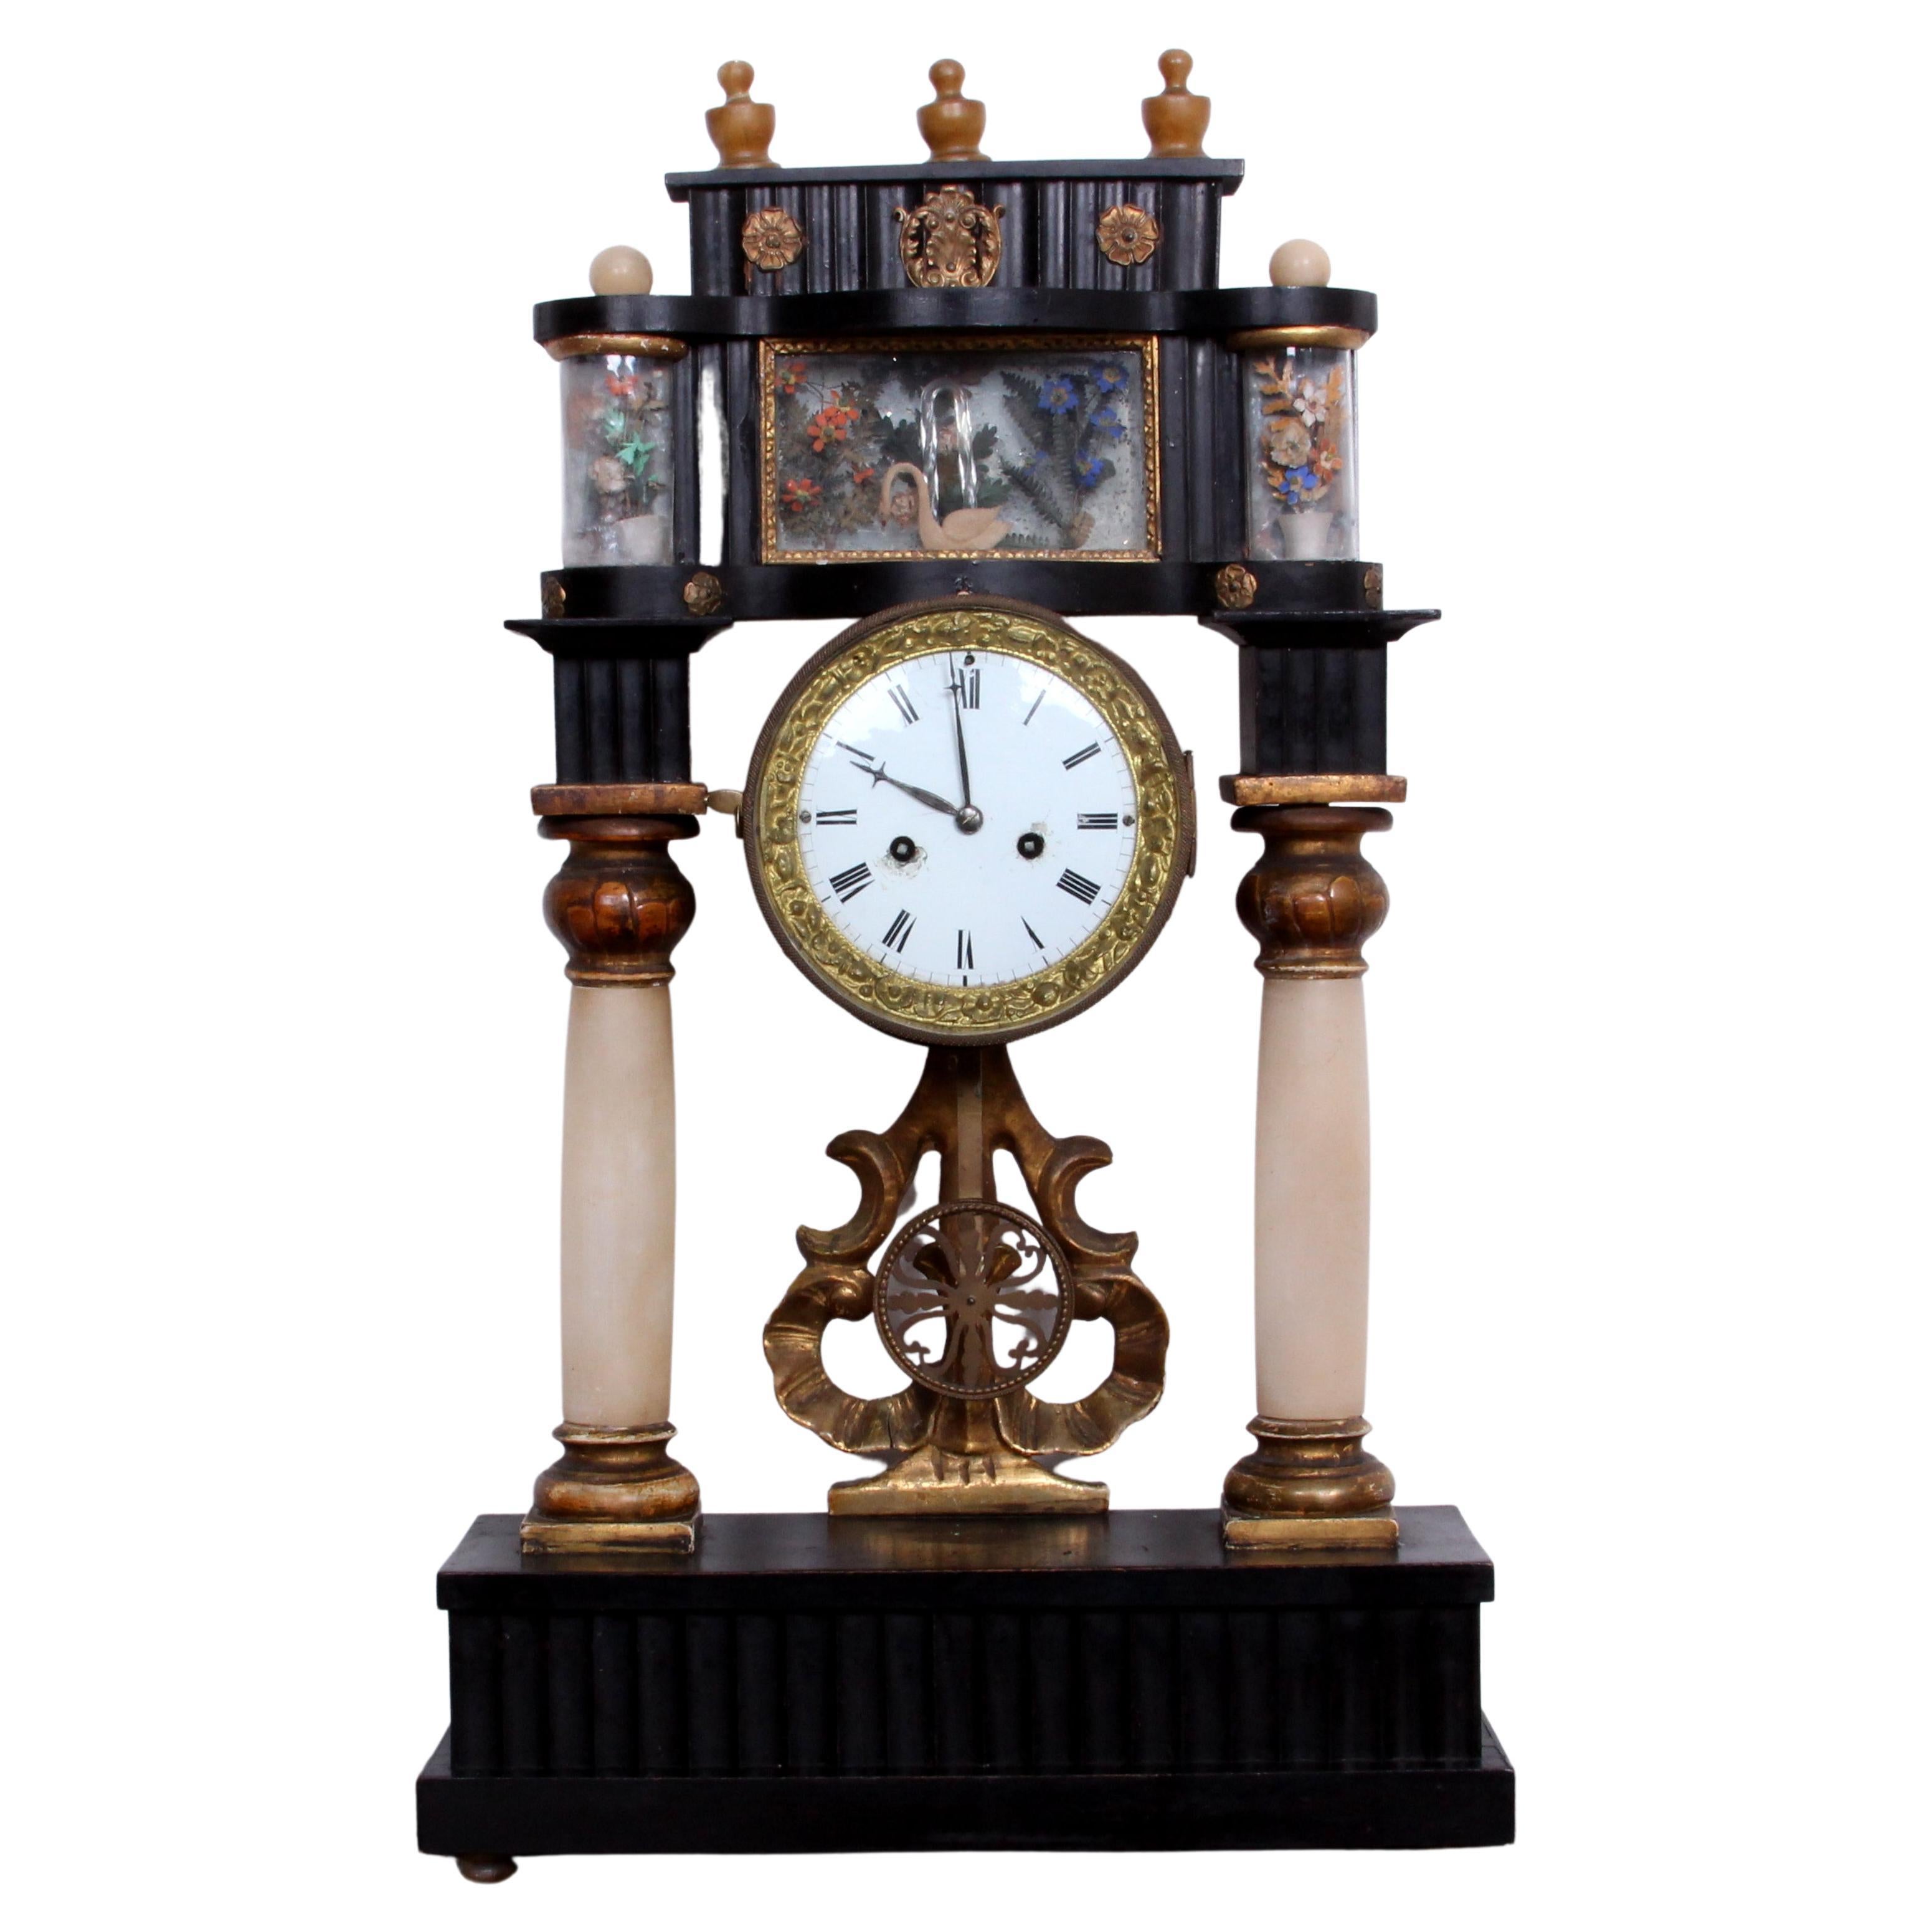 Horloge à colonne viennoise Portal Clock de l'époque Biedermeier, vitrine de fleurs, ar. 1840 